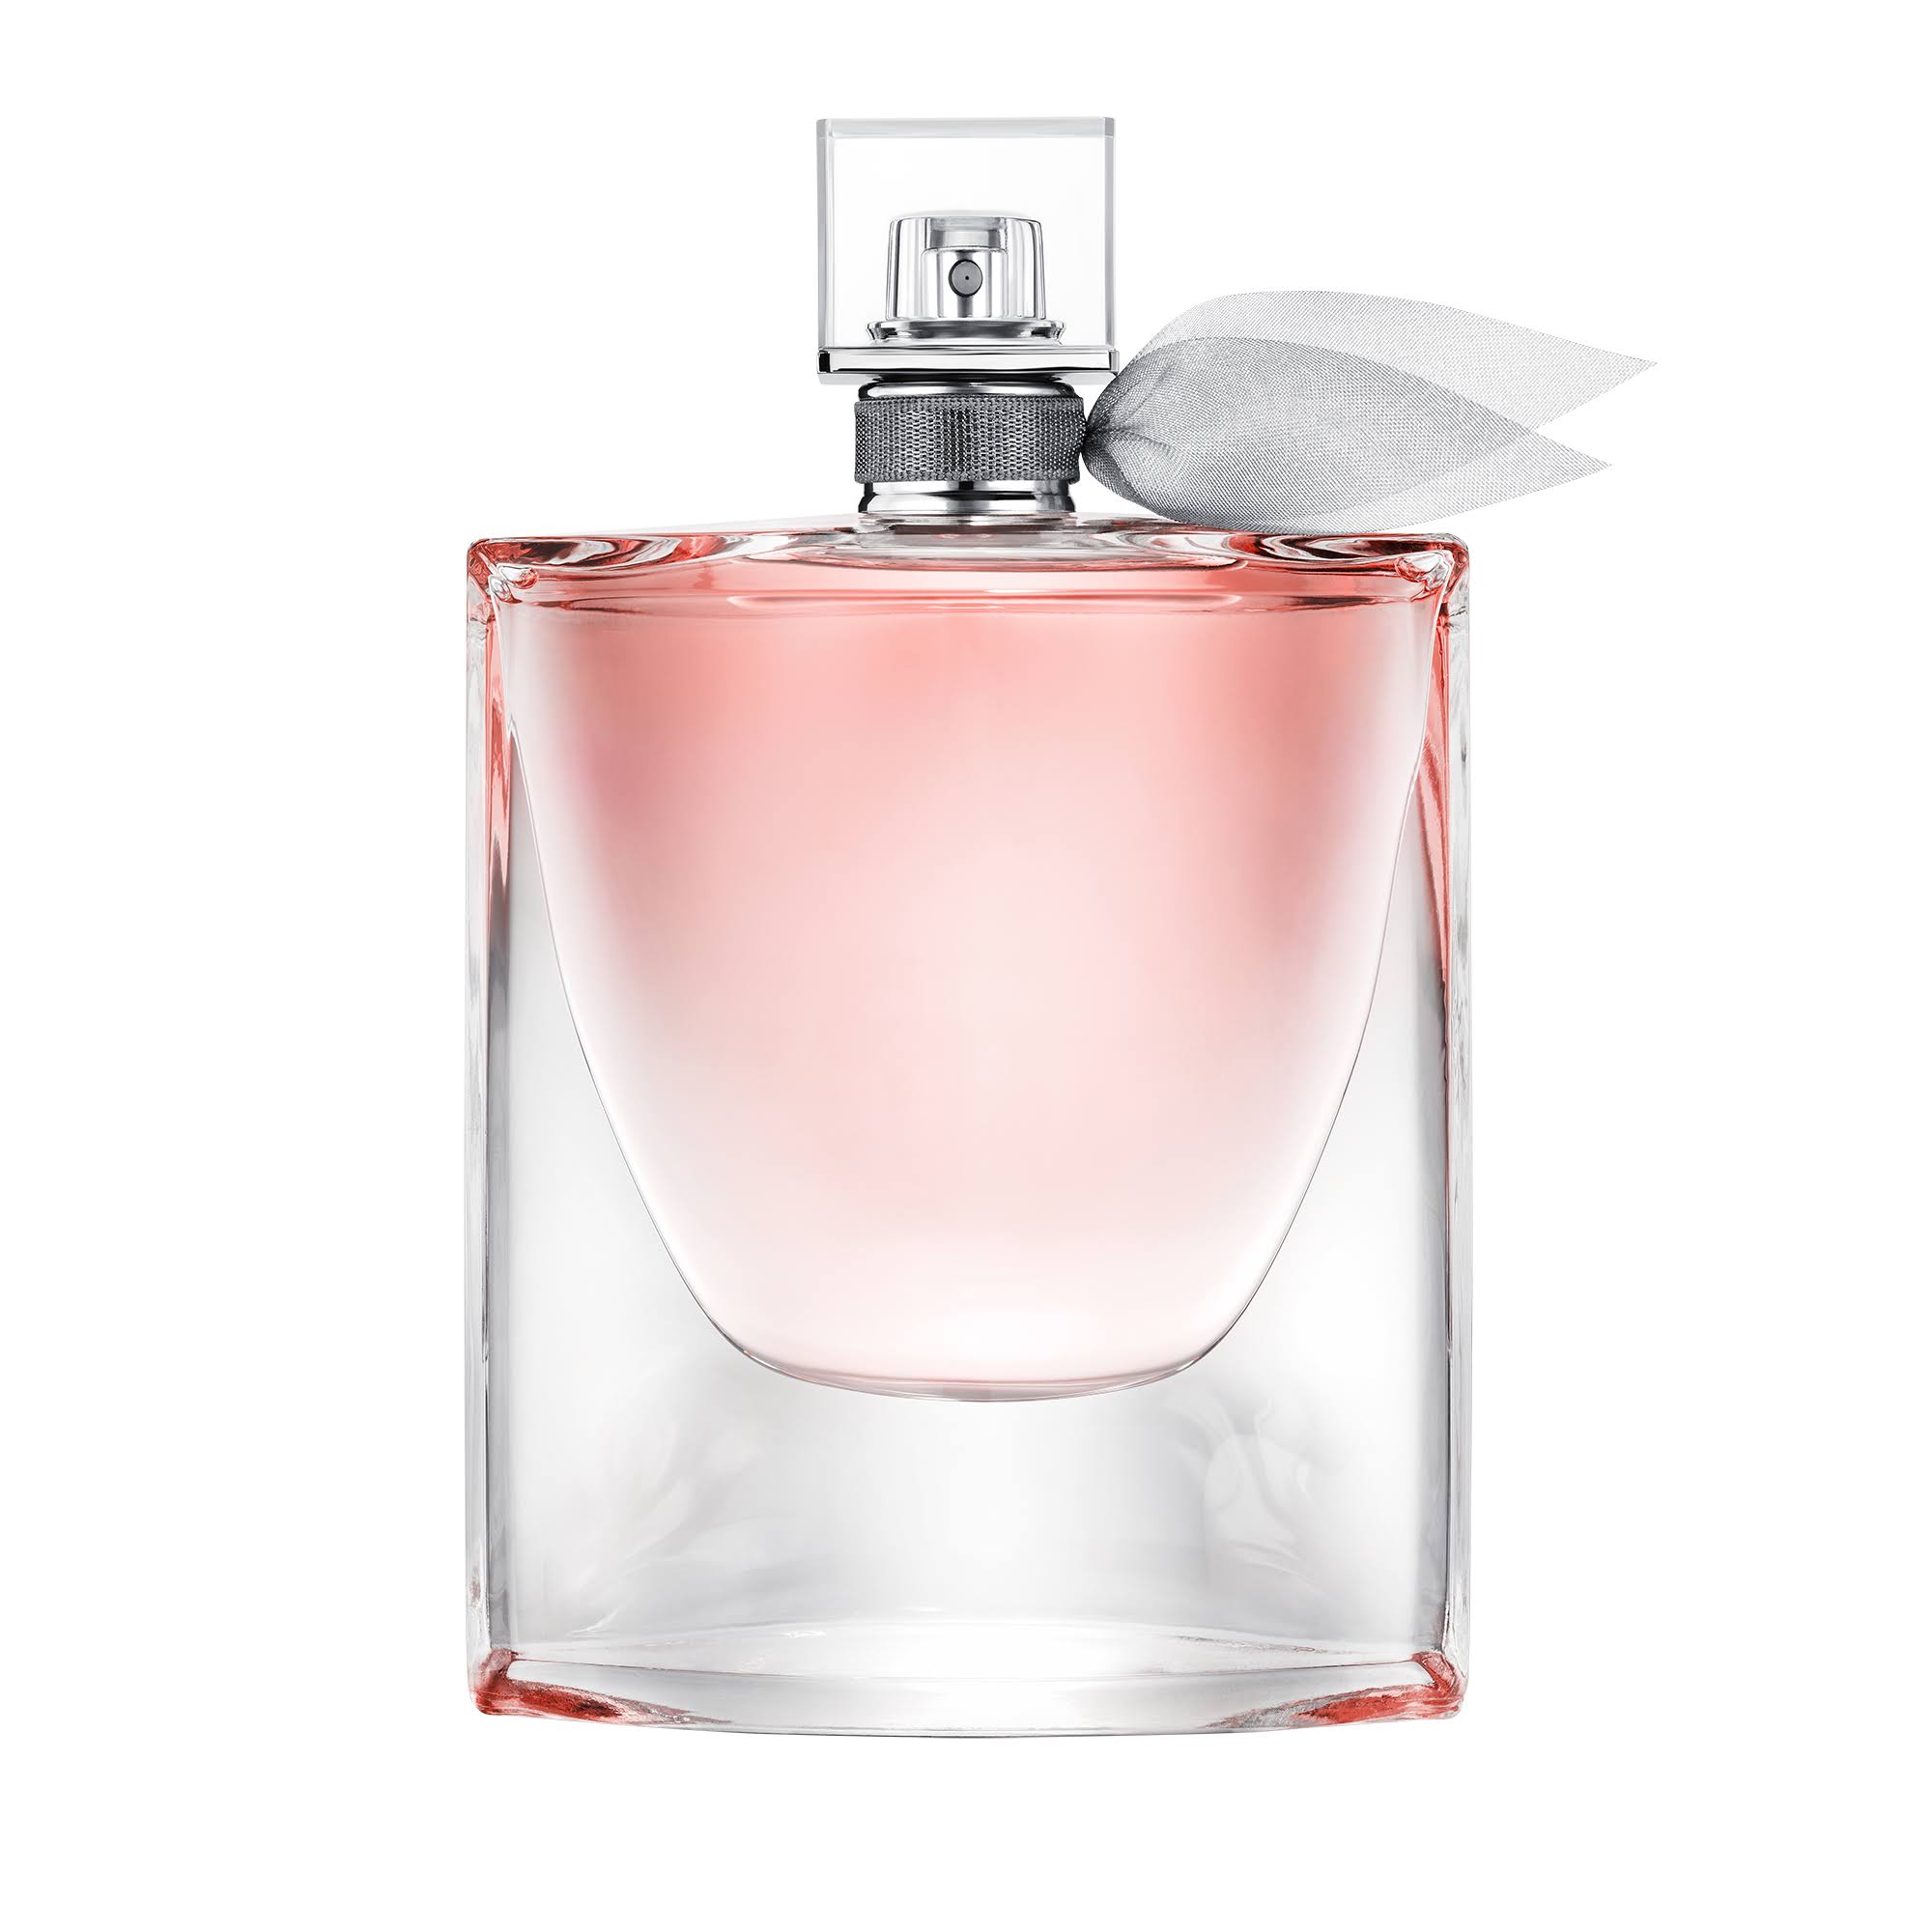 Lancome La Vie Est Belle Eau de Parfum Spray 3.4 oz / 100 ml